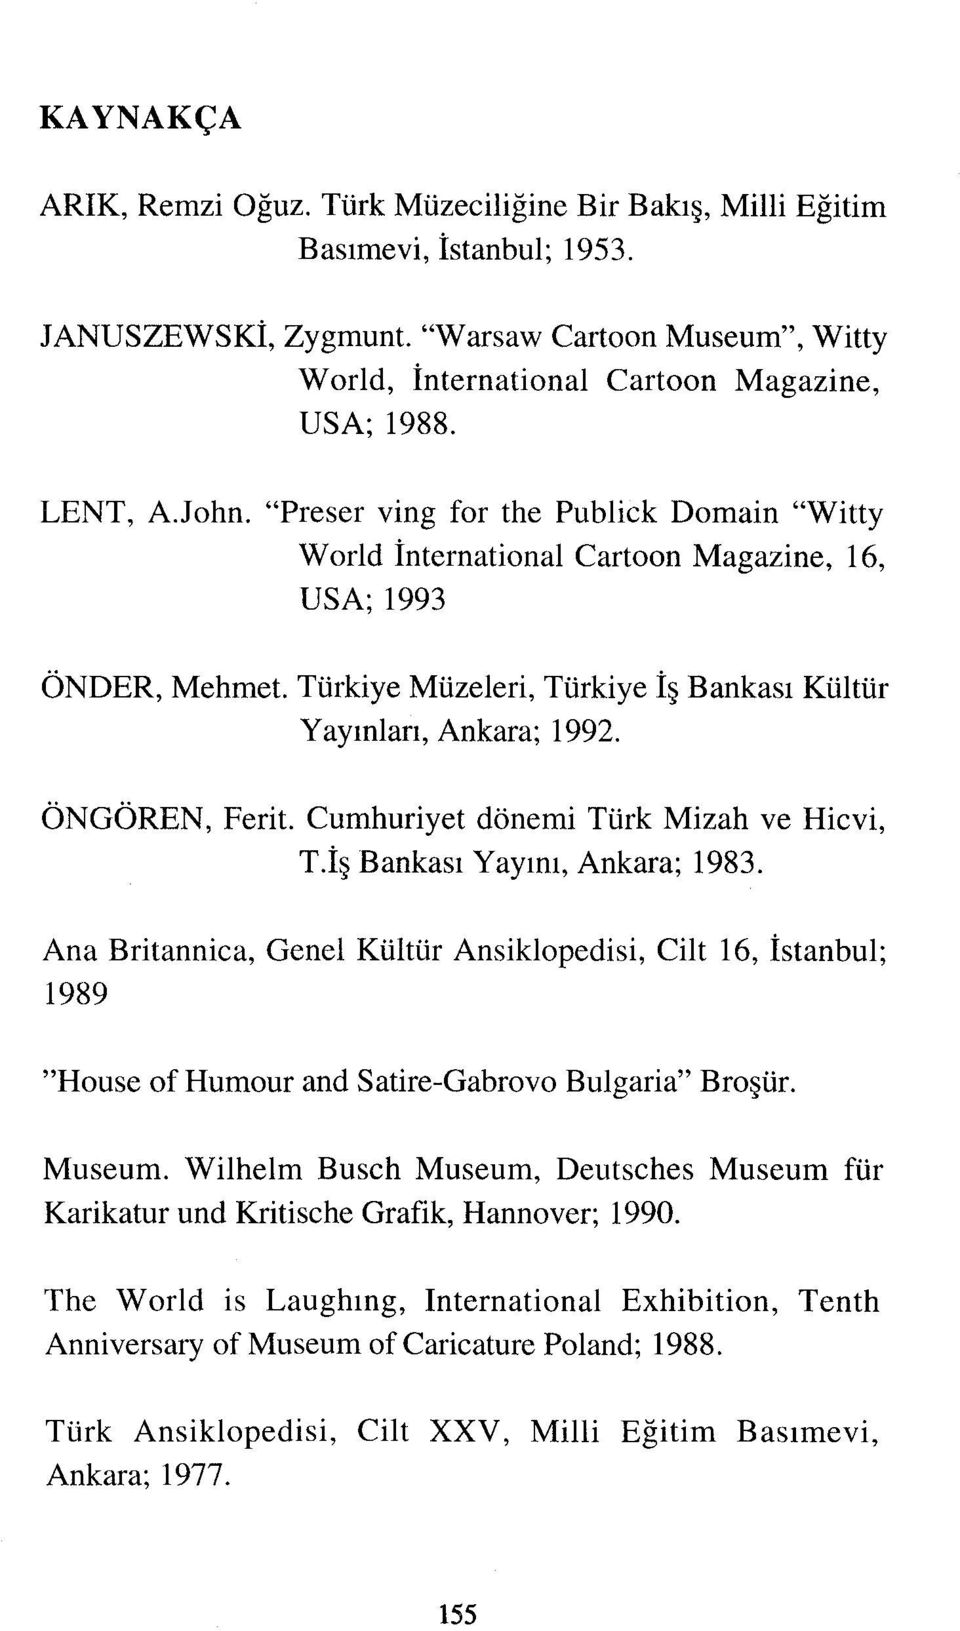 ÖNGÖREN, Ferit. Cumhuriyet dönemi Türk Mizah ve Hicvi, T.İş Bankası Yayını, Ankara; 1983.